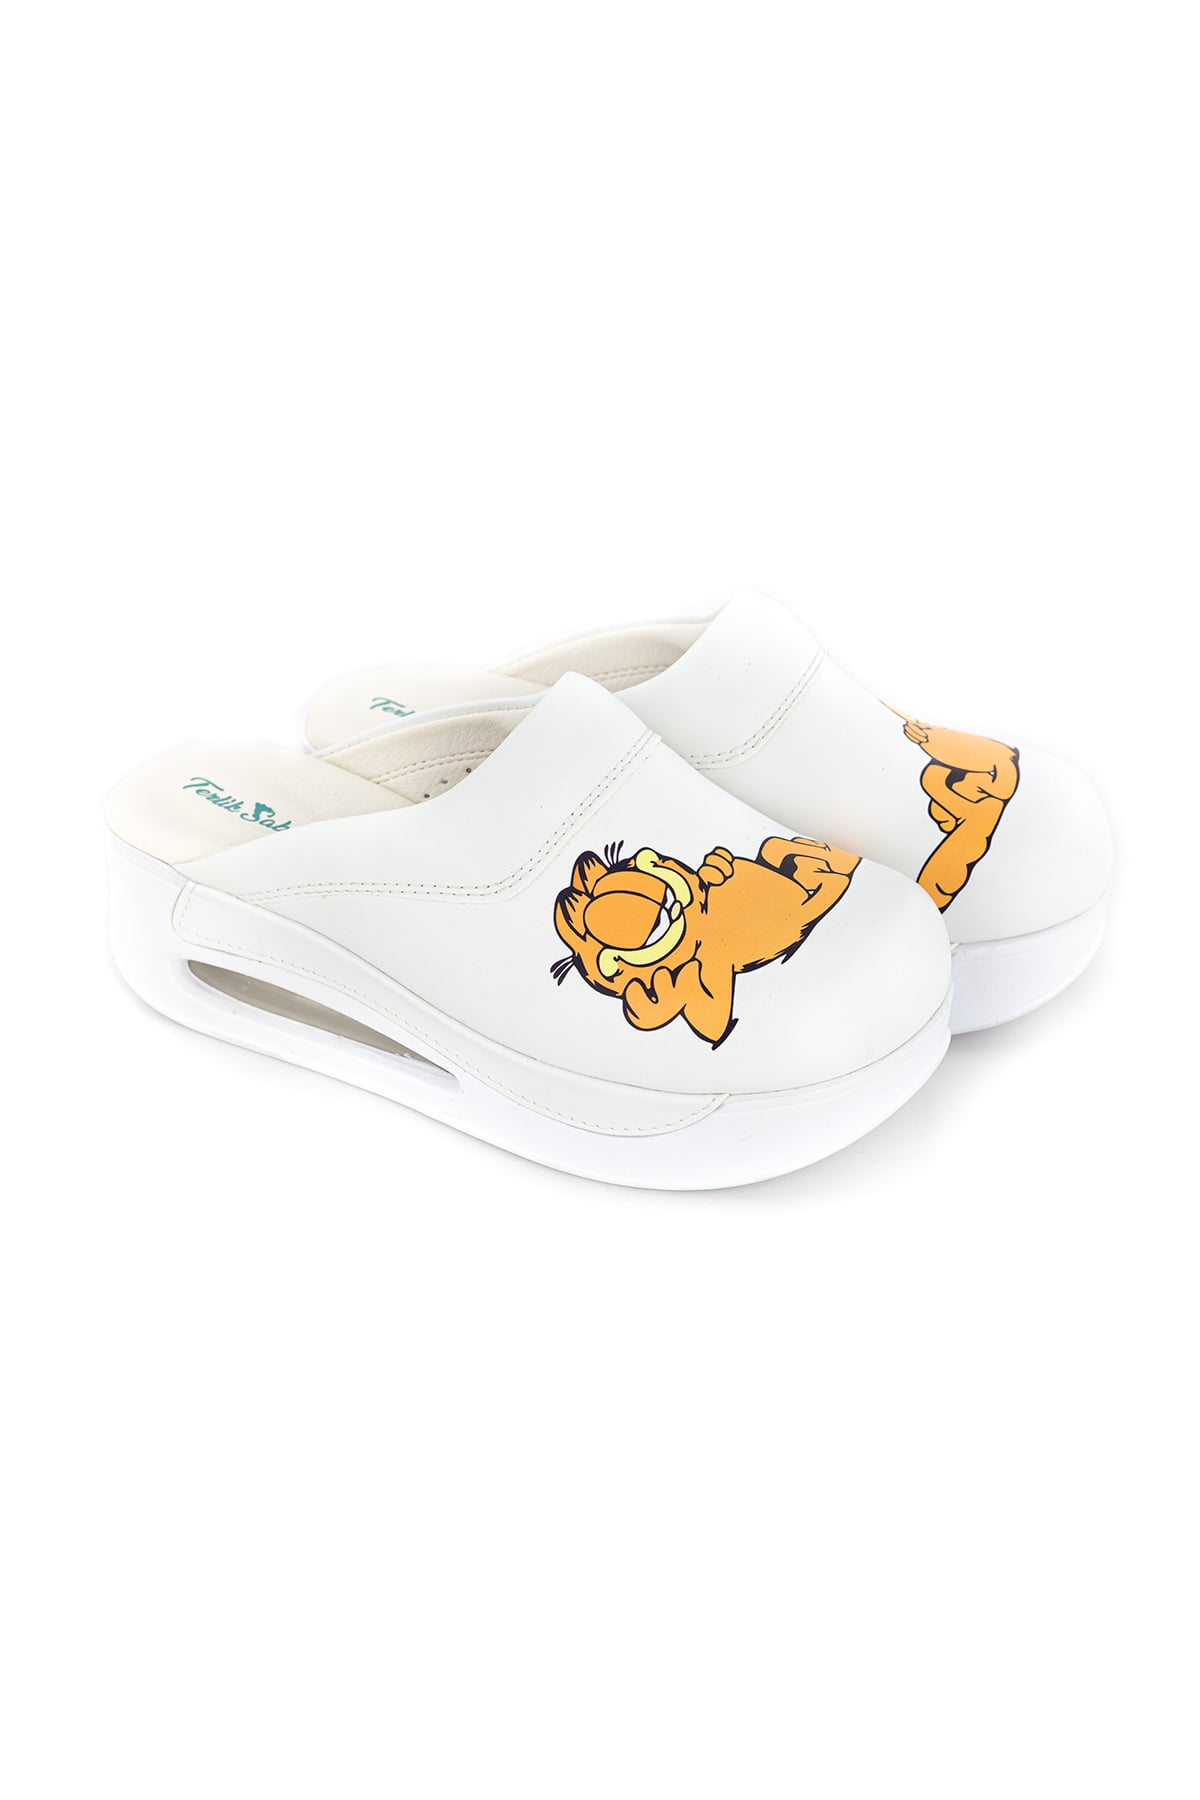 Terlik farbenfrohe und medizinische AIR-Schuhe – bequeme Hausschuhe Garfield Hausschuhe AIR und AIR LIGHTY AIR Hausschuhe 3